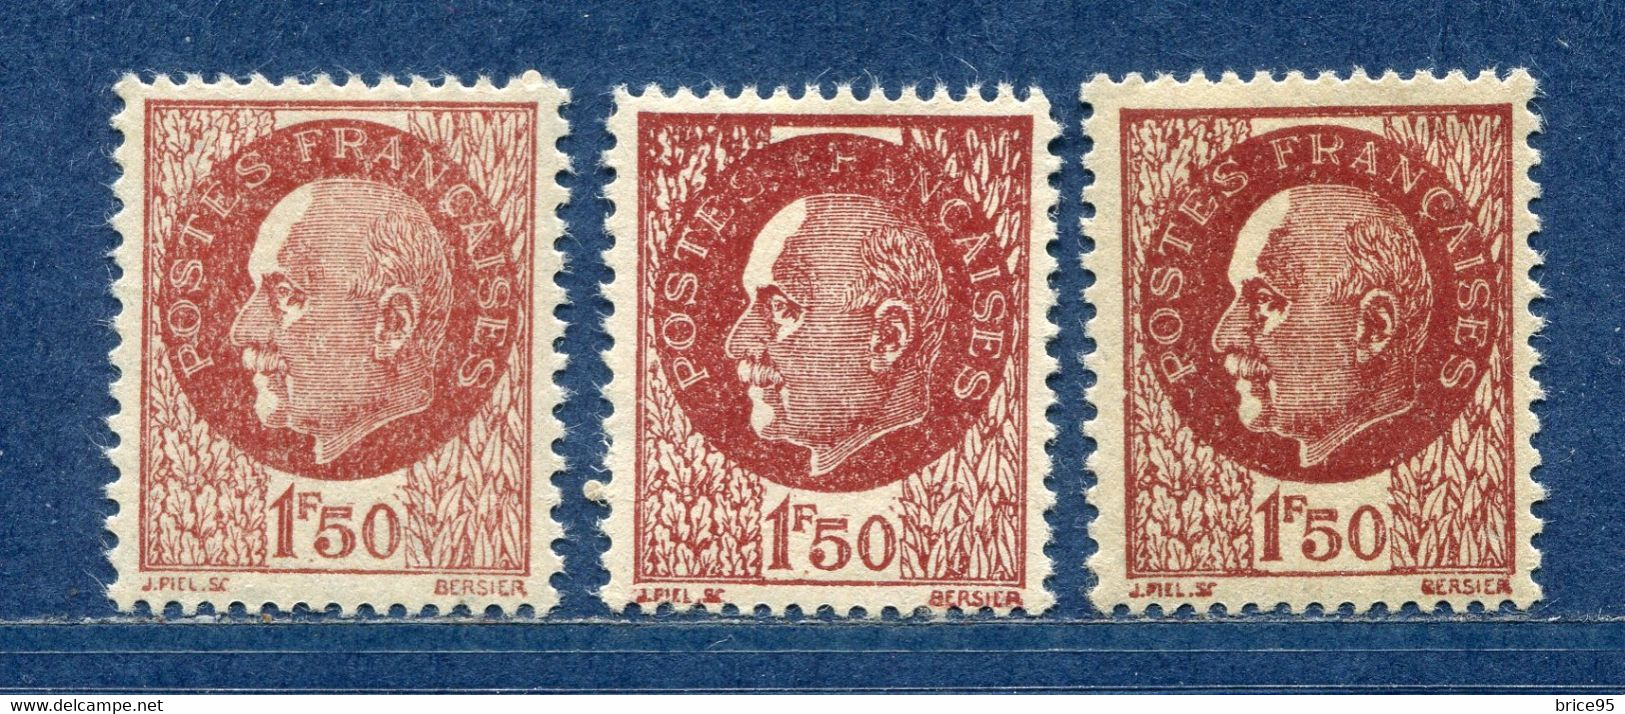 ⭐ France - Variété - YT N° 517 - Couleurs - Pétouilles - Neuf Sans Charnière - 1941 ⭐ - Unused Stamps